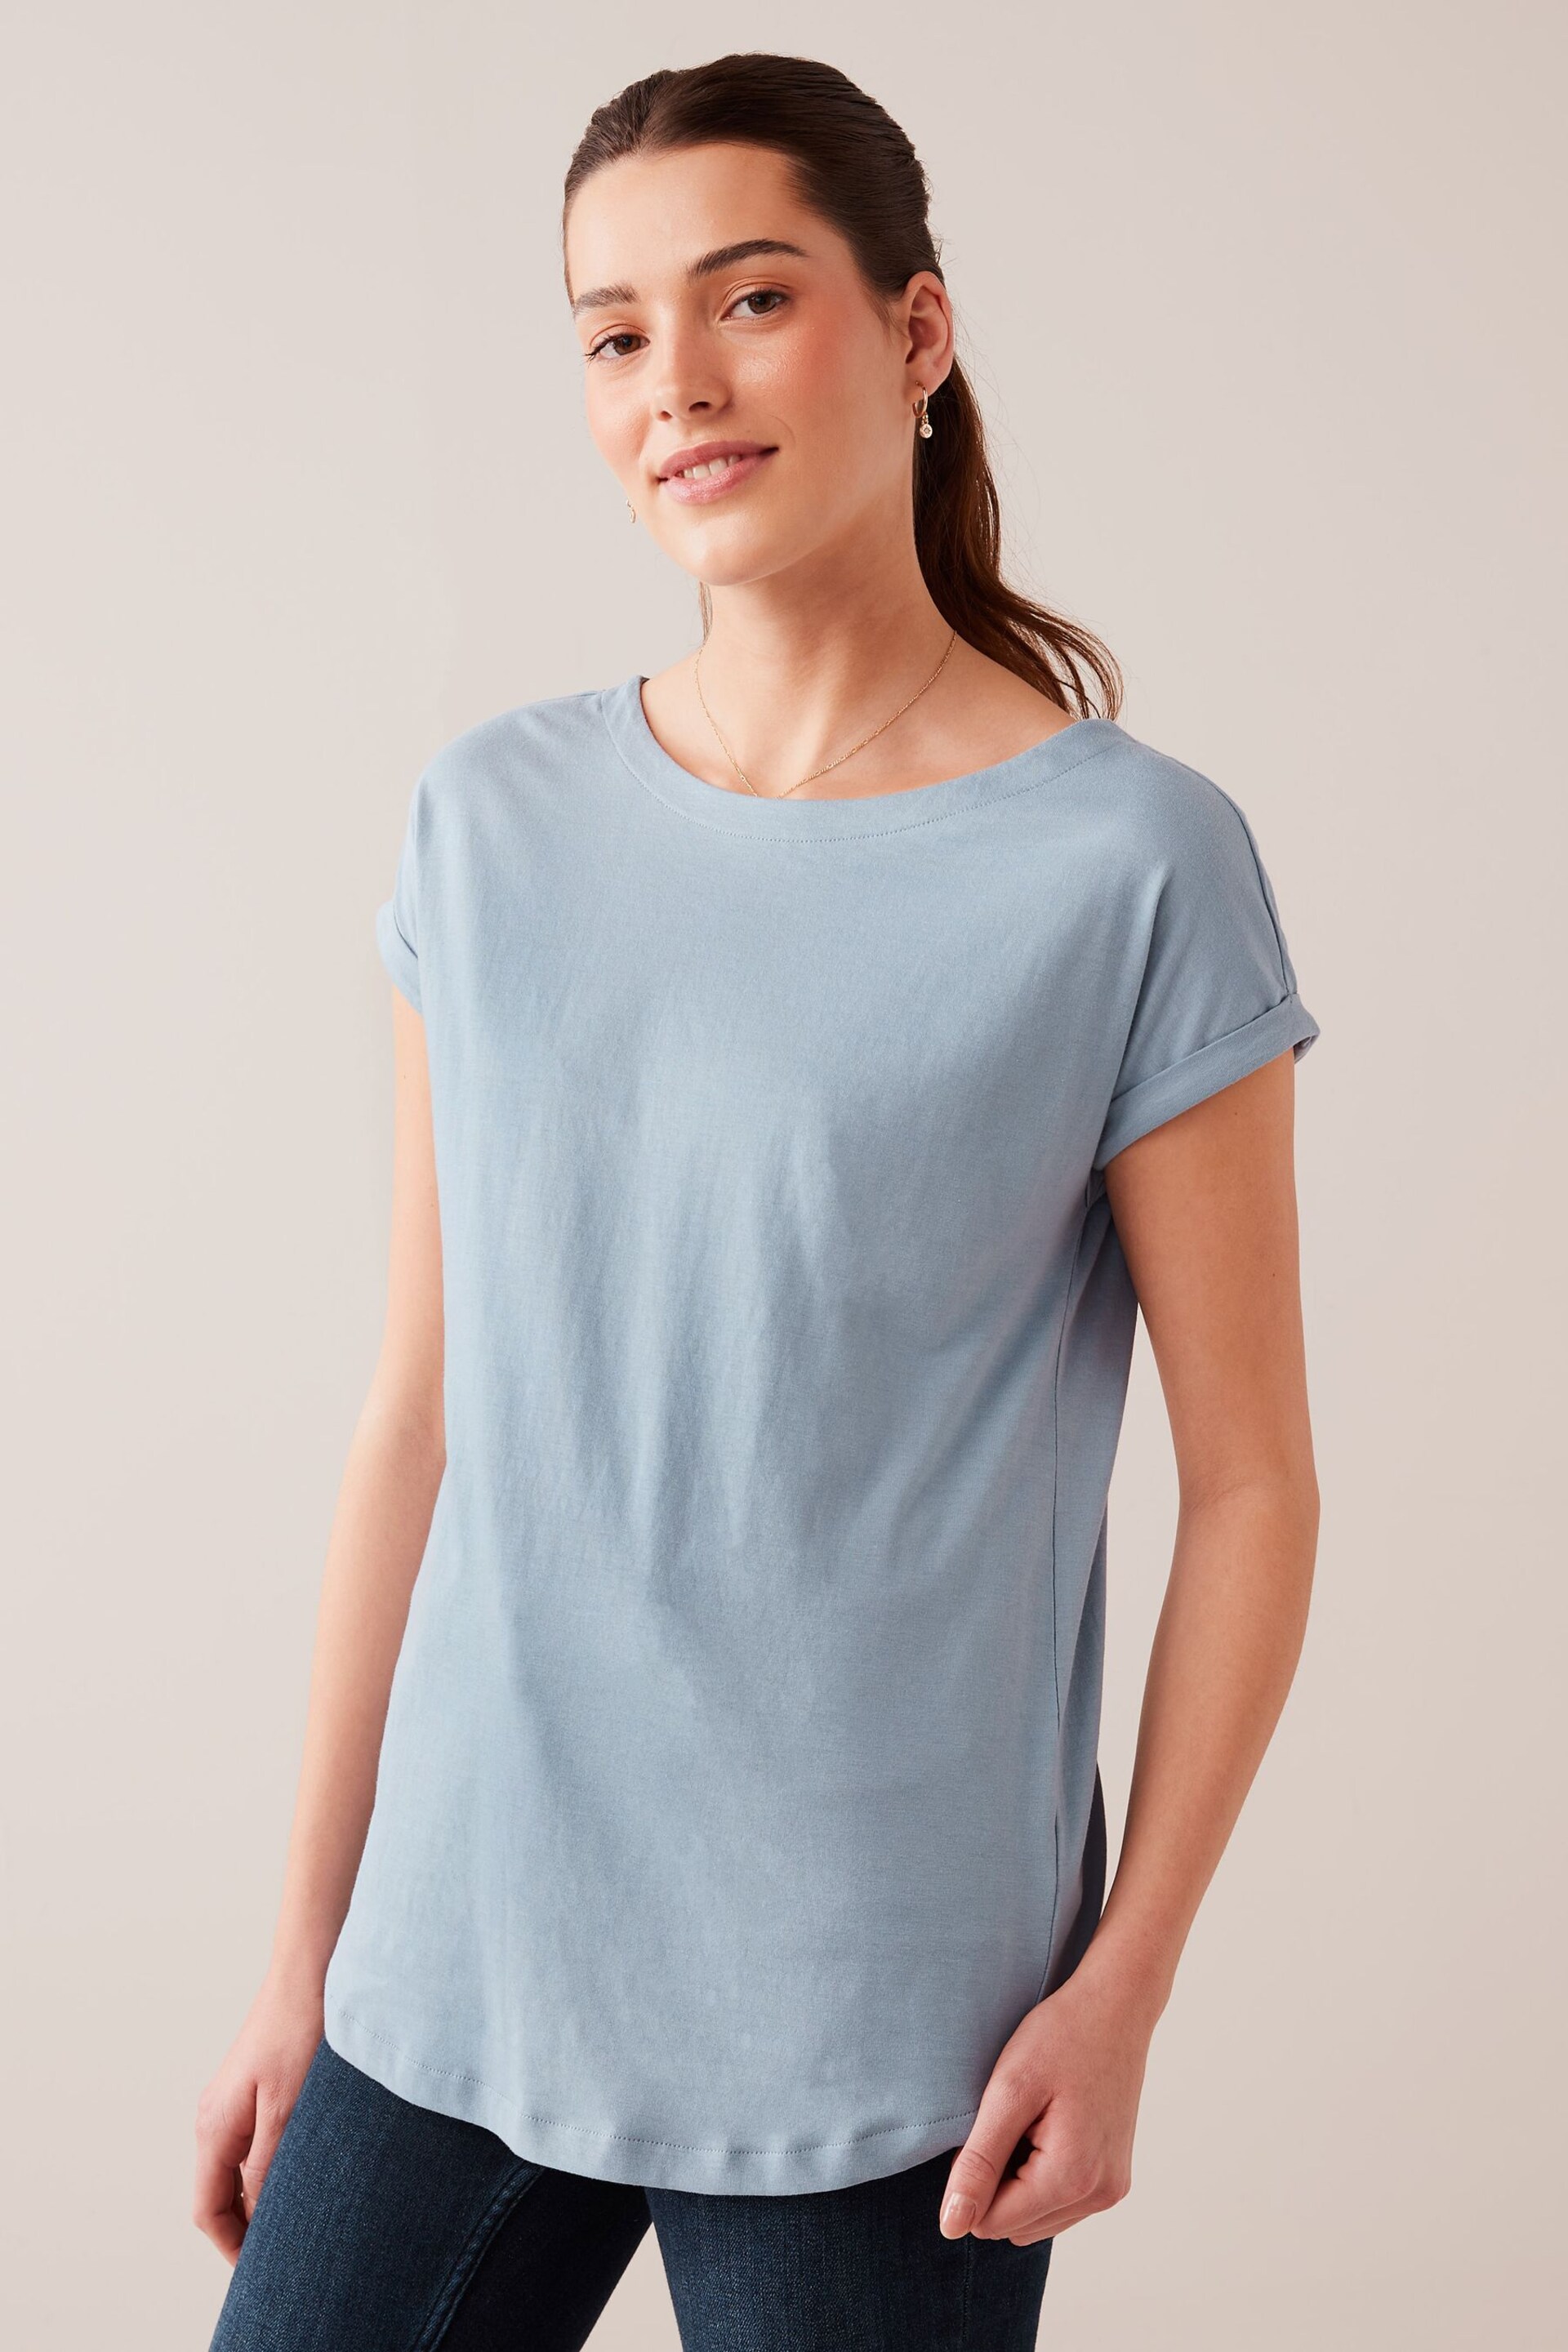 Blue Dusky Round Neck Cap Sleeve T-Shirt - Image 1 of 5